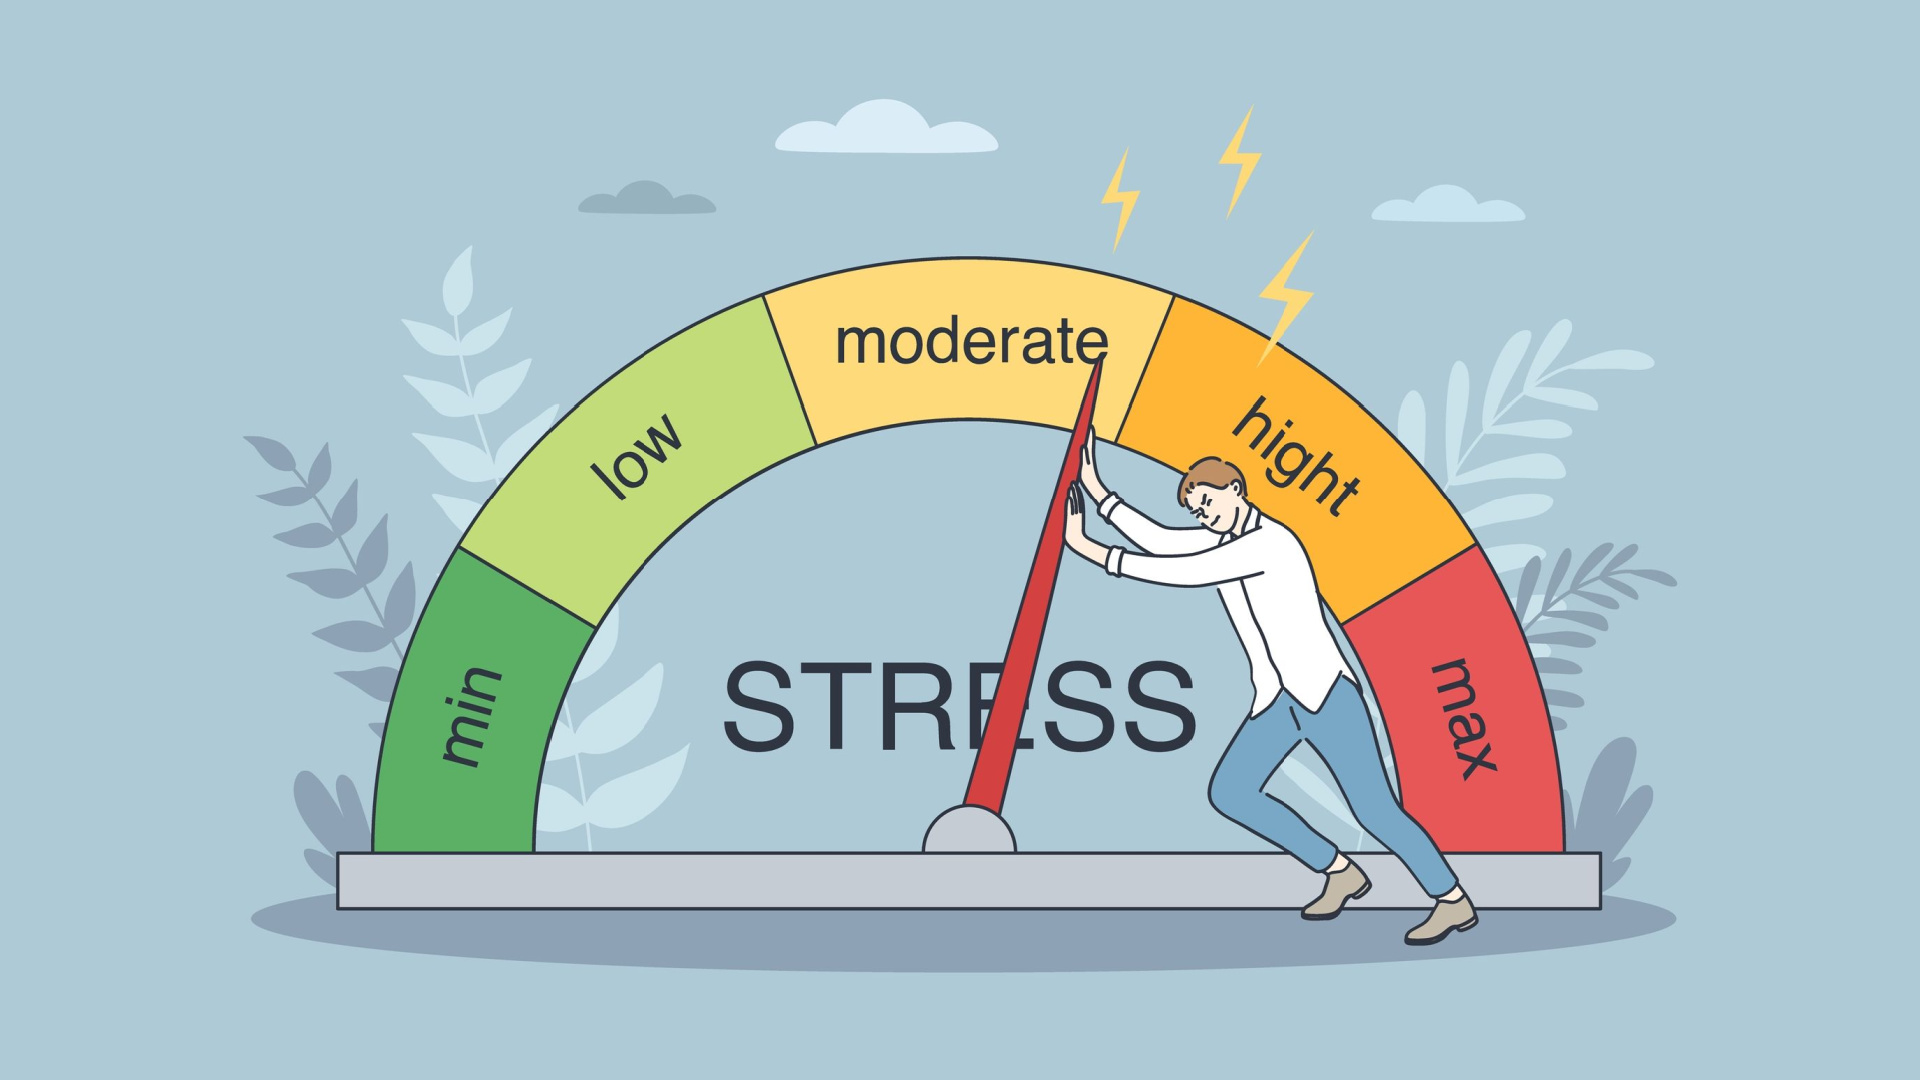 ストレスチェック制度とは? 概要や義務となる事業者、実施の流れなどを解説